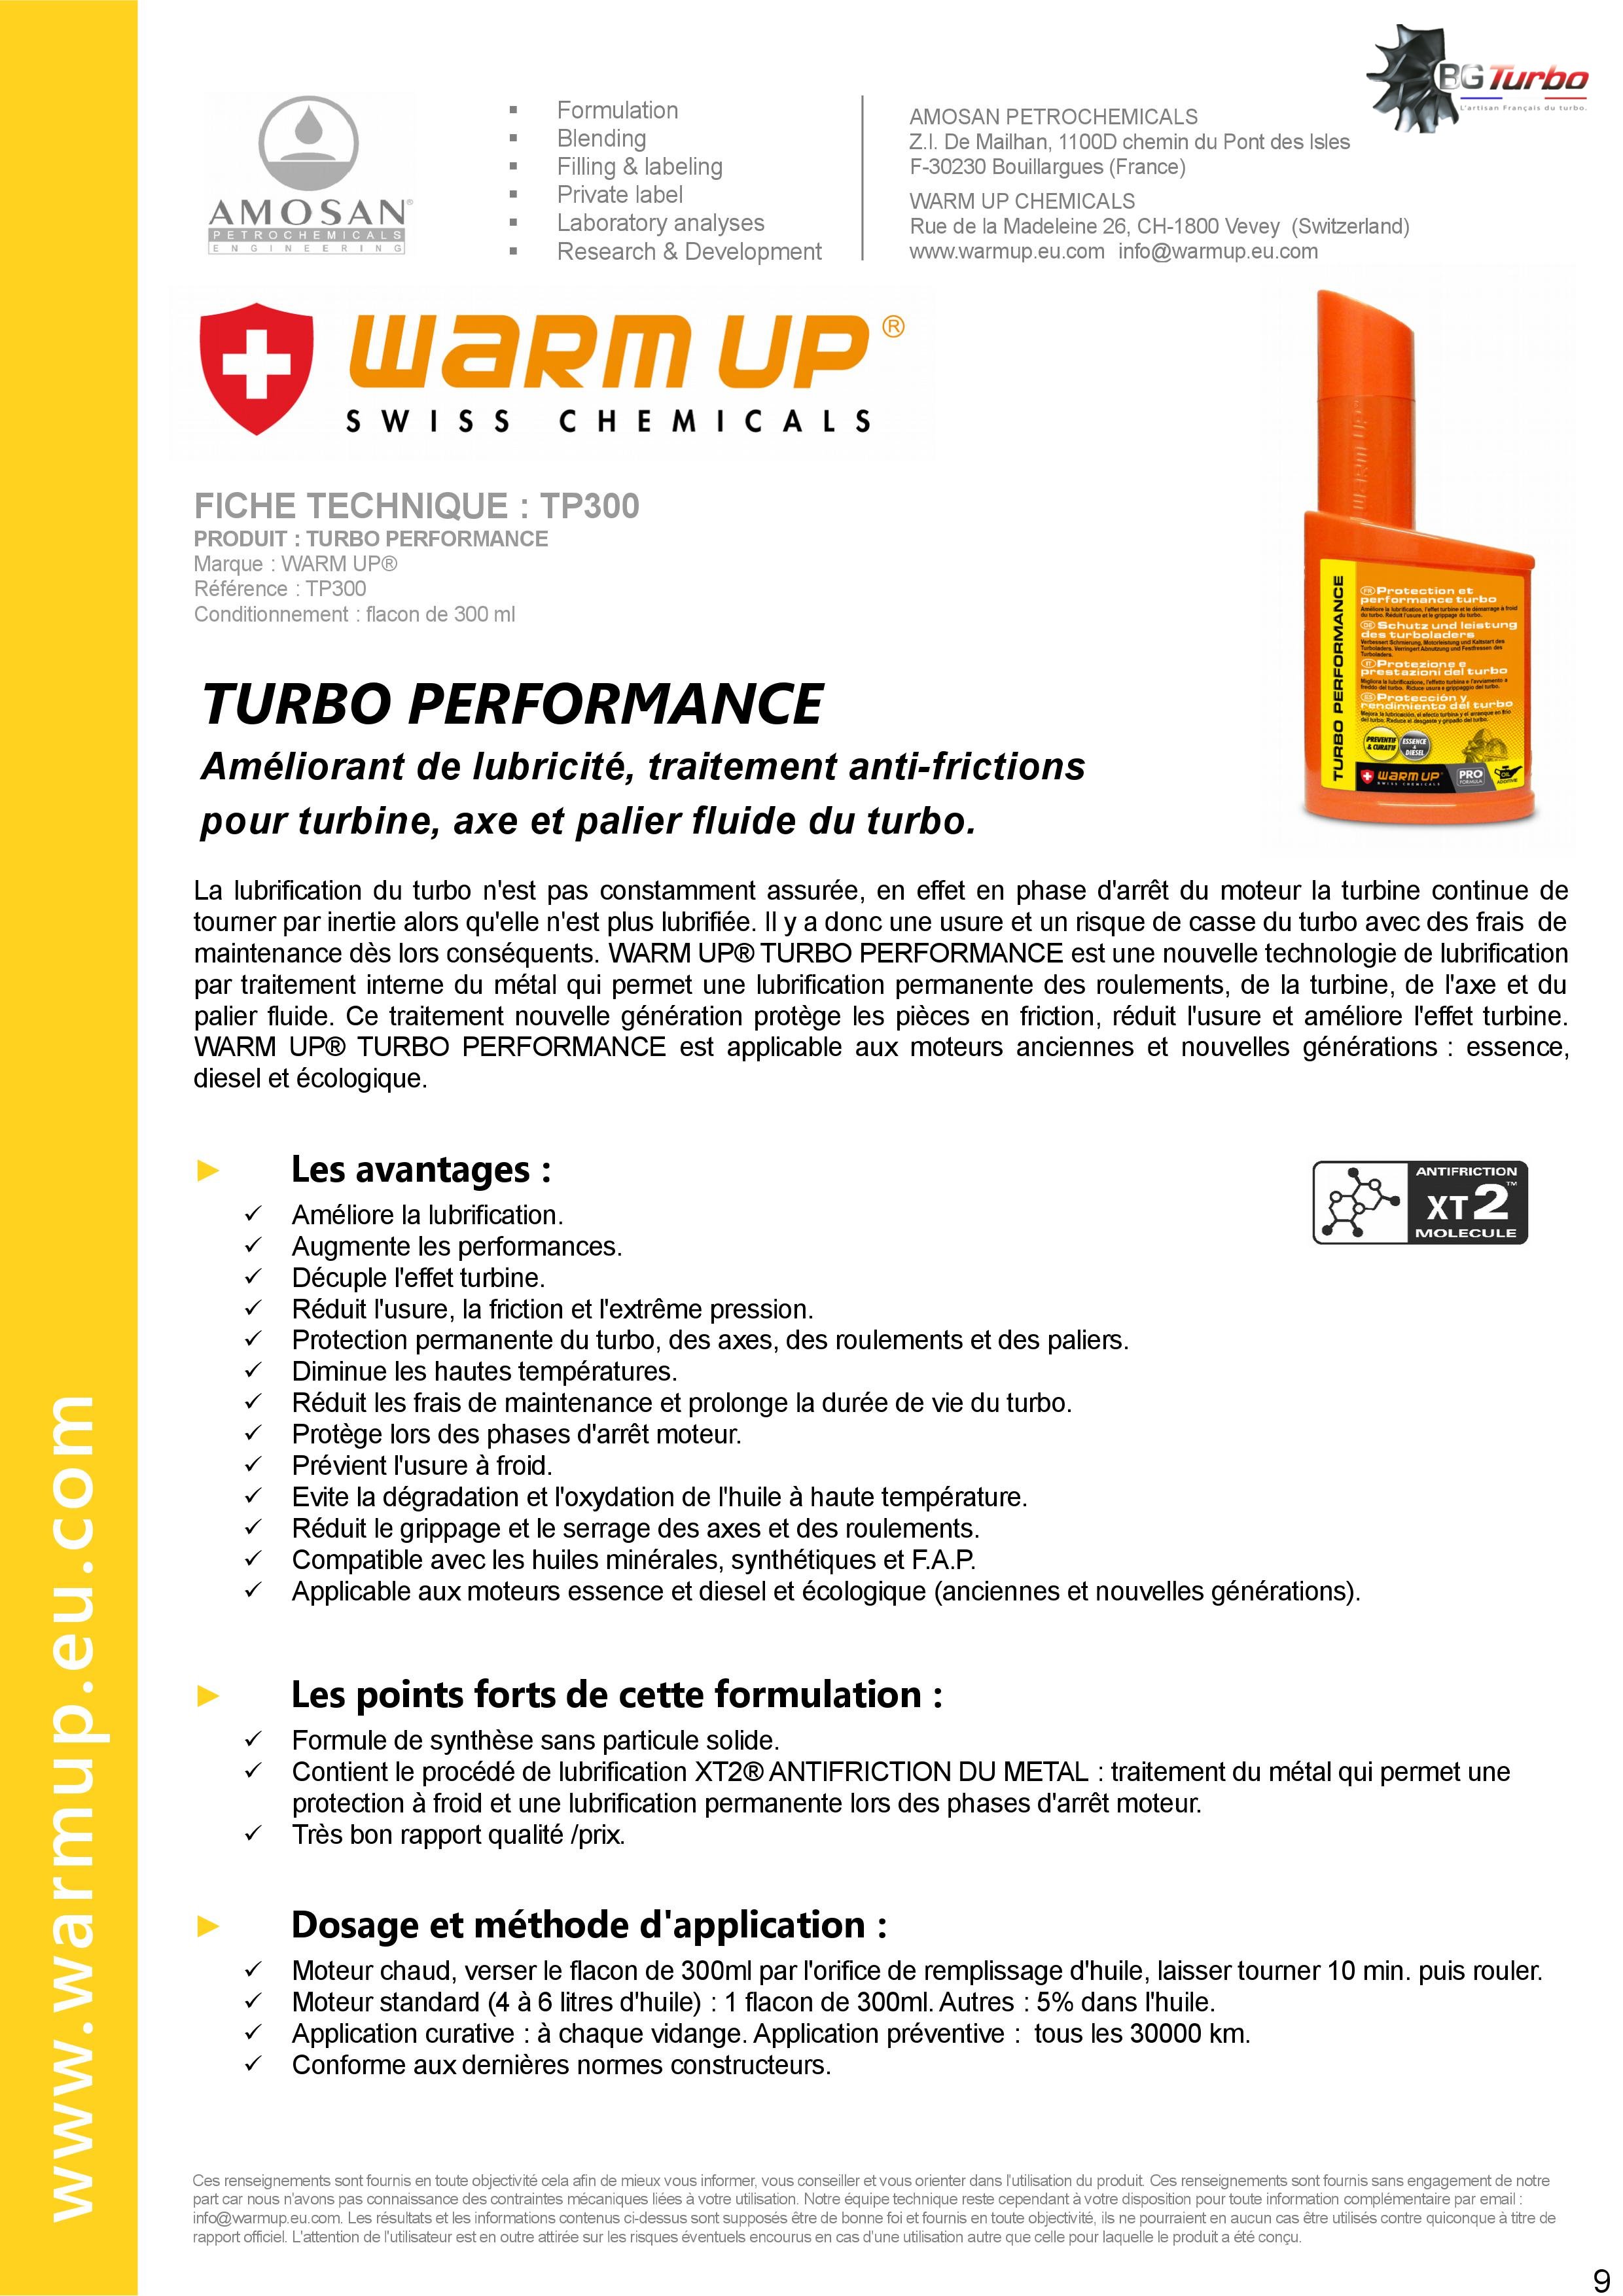 WARM UP Turbo Performance - Améliorant de lubricité et traitement antifriction pour axe et palier fluide du turbo - par AMOSAN WARMUP
